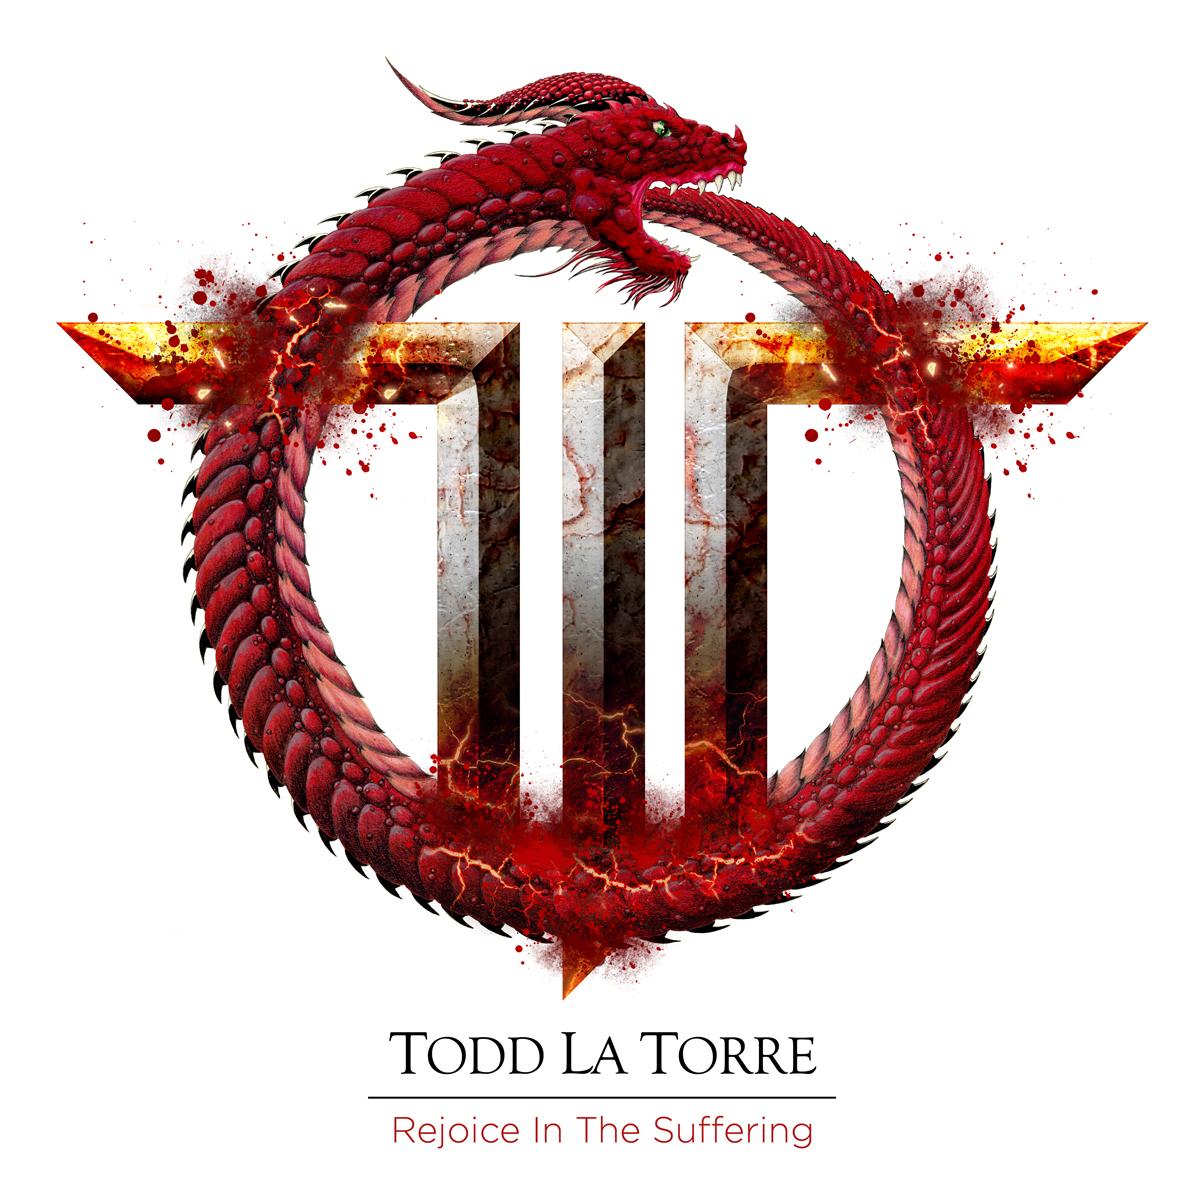 QUEENSRŸCHE FRONTMAN TODD LA TORRE RELEASES MUSIC VIDEO FOR “VEXED”